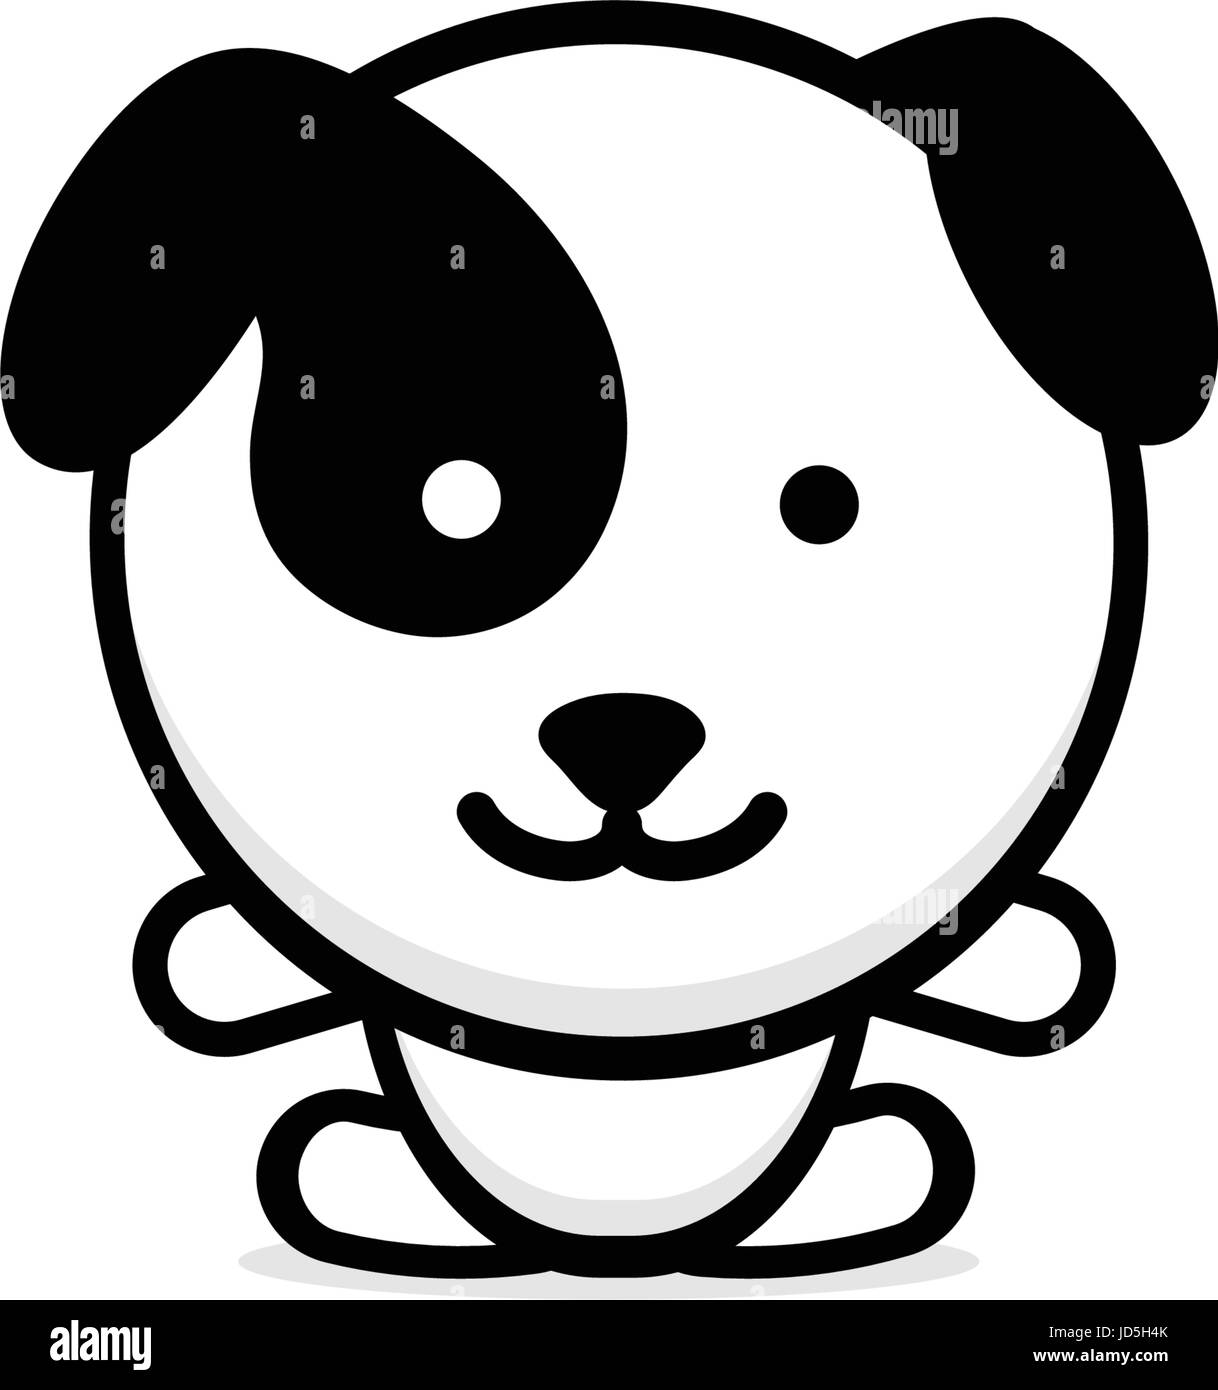 Niedlichen Hund-Vektor-Illustration, Baby Welpen-Logo, neues design, Kunst, Pet Schwarz Farbe Zeichen, einfaches Bild, Bild mit Tier Stock Vektor